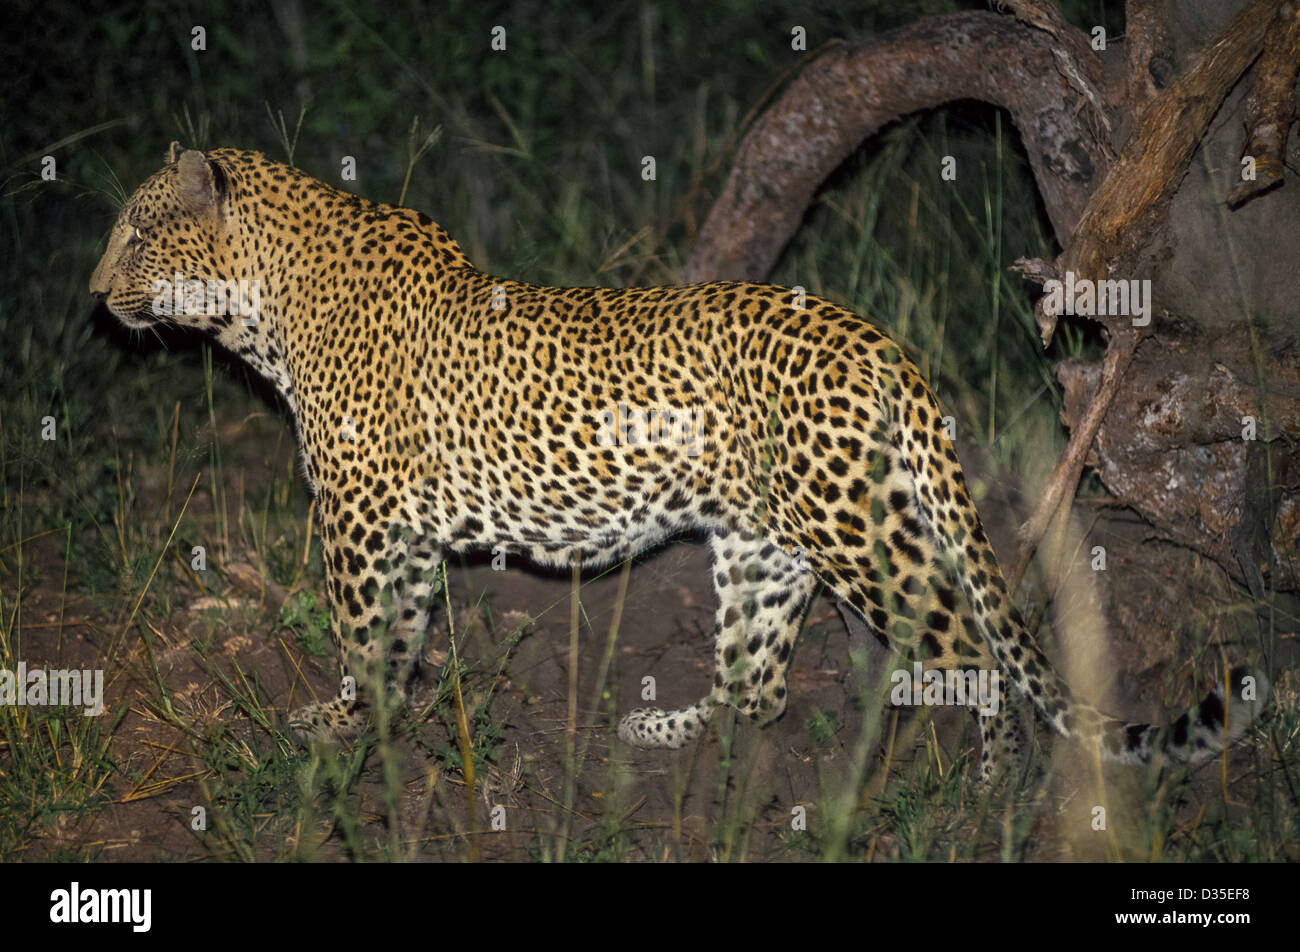 Eine umherstreunende Leopard wird durch einen Blitz während einer nächtlichen Wildlife Safari in MalaMala, dem größten privaten Wildreservat in Südafrika erfasst. Stockfoto